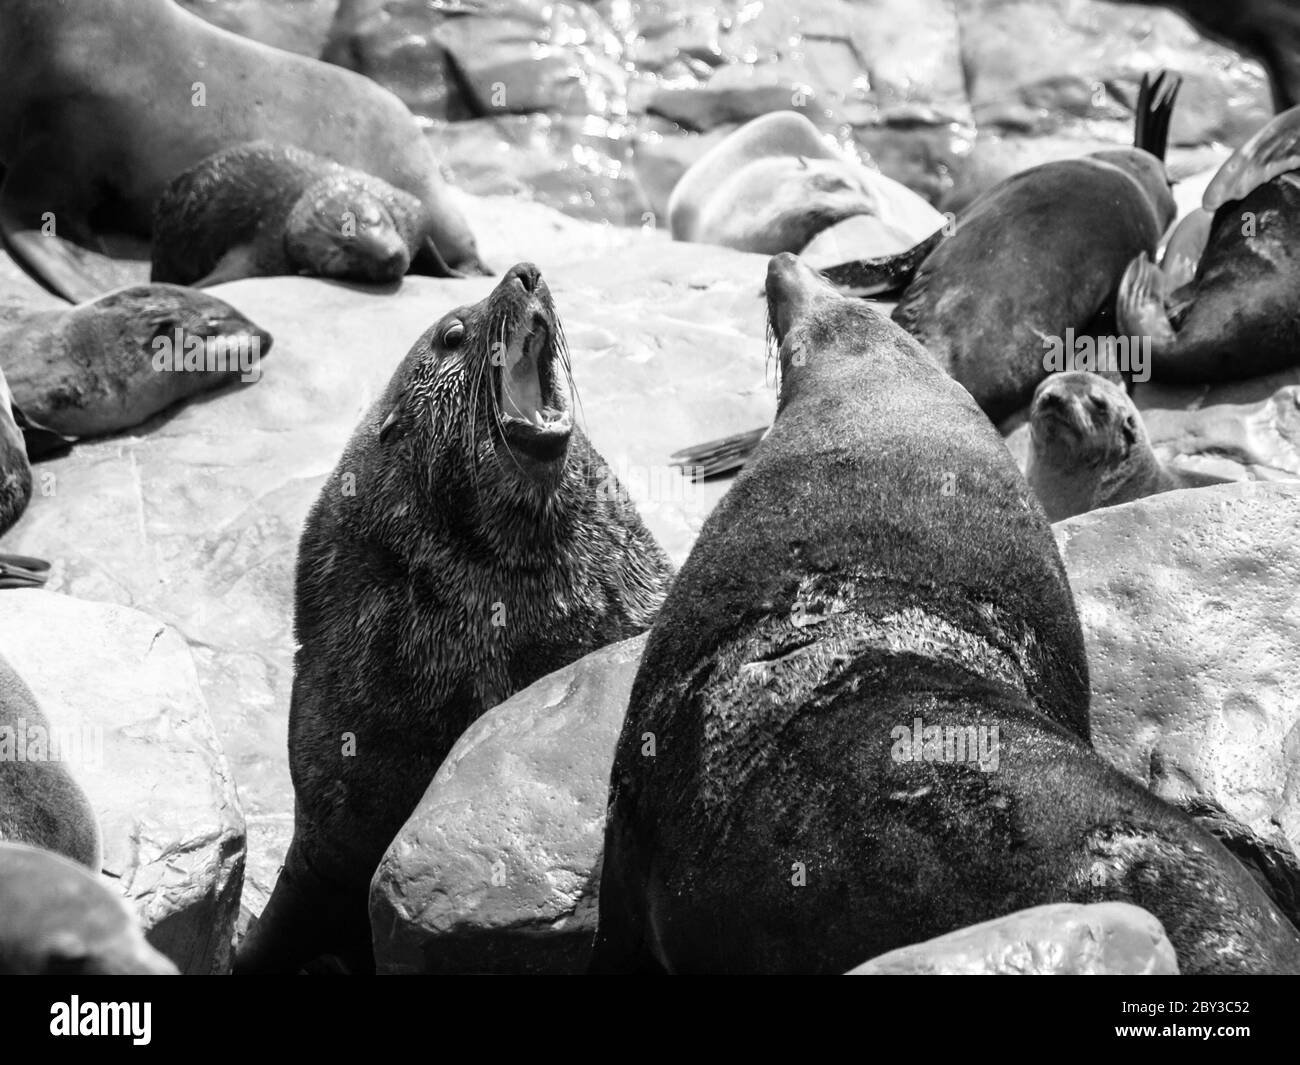 Due pericolosi foche di pelliccia marrone che combattono su una roccia. Immagine in bianco e nero. Foto Stock